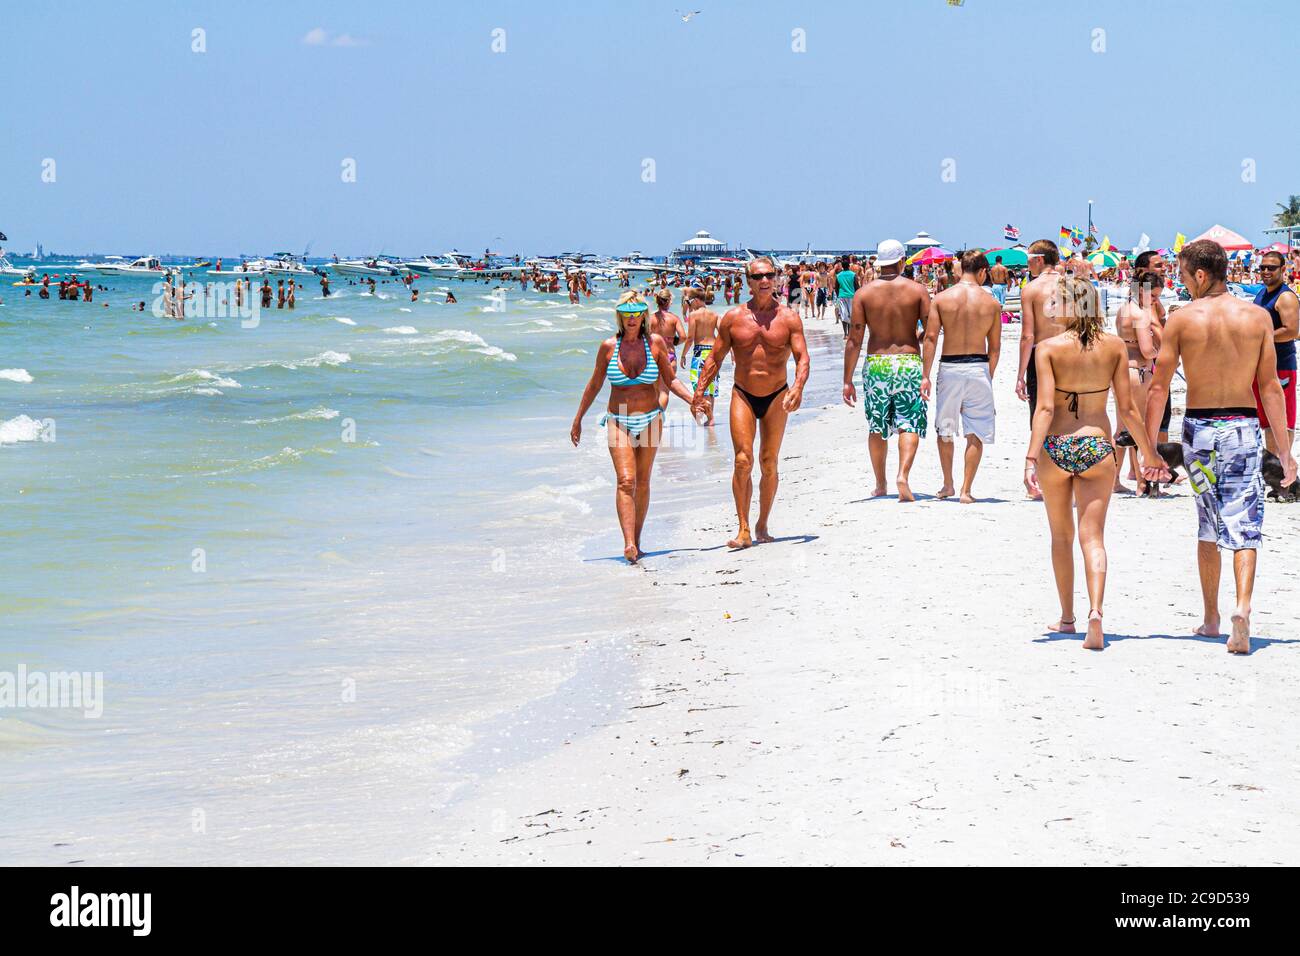 Pi.Fort Myers Beach Florida, côte du golfe du Mexique, bains de soleil, couples, les membres de la plage, les visiteurs voyage voyage visite touristique site touristique sites touristiques cu Banque D'Images